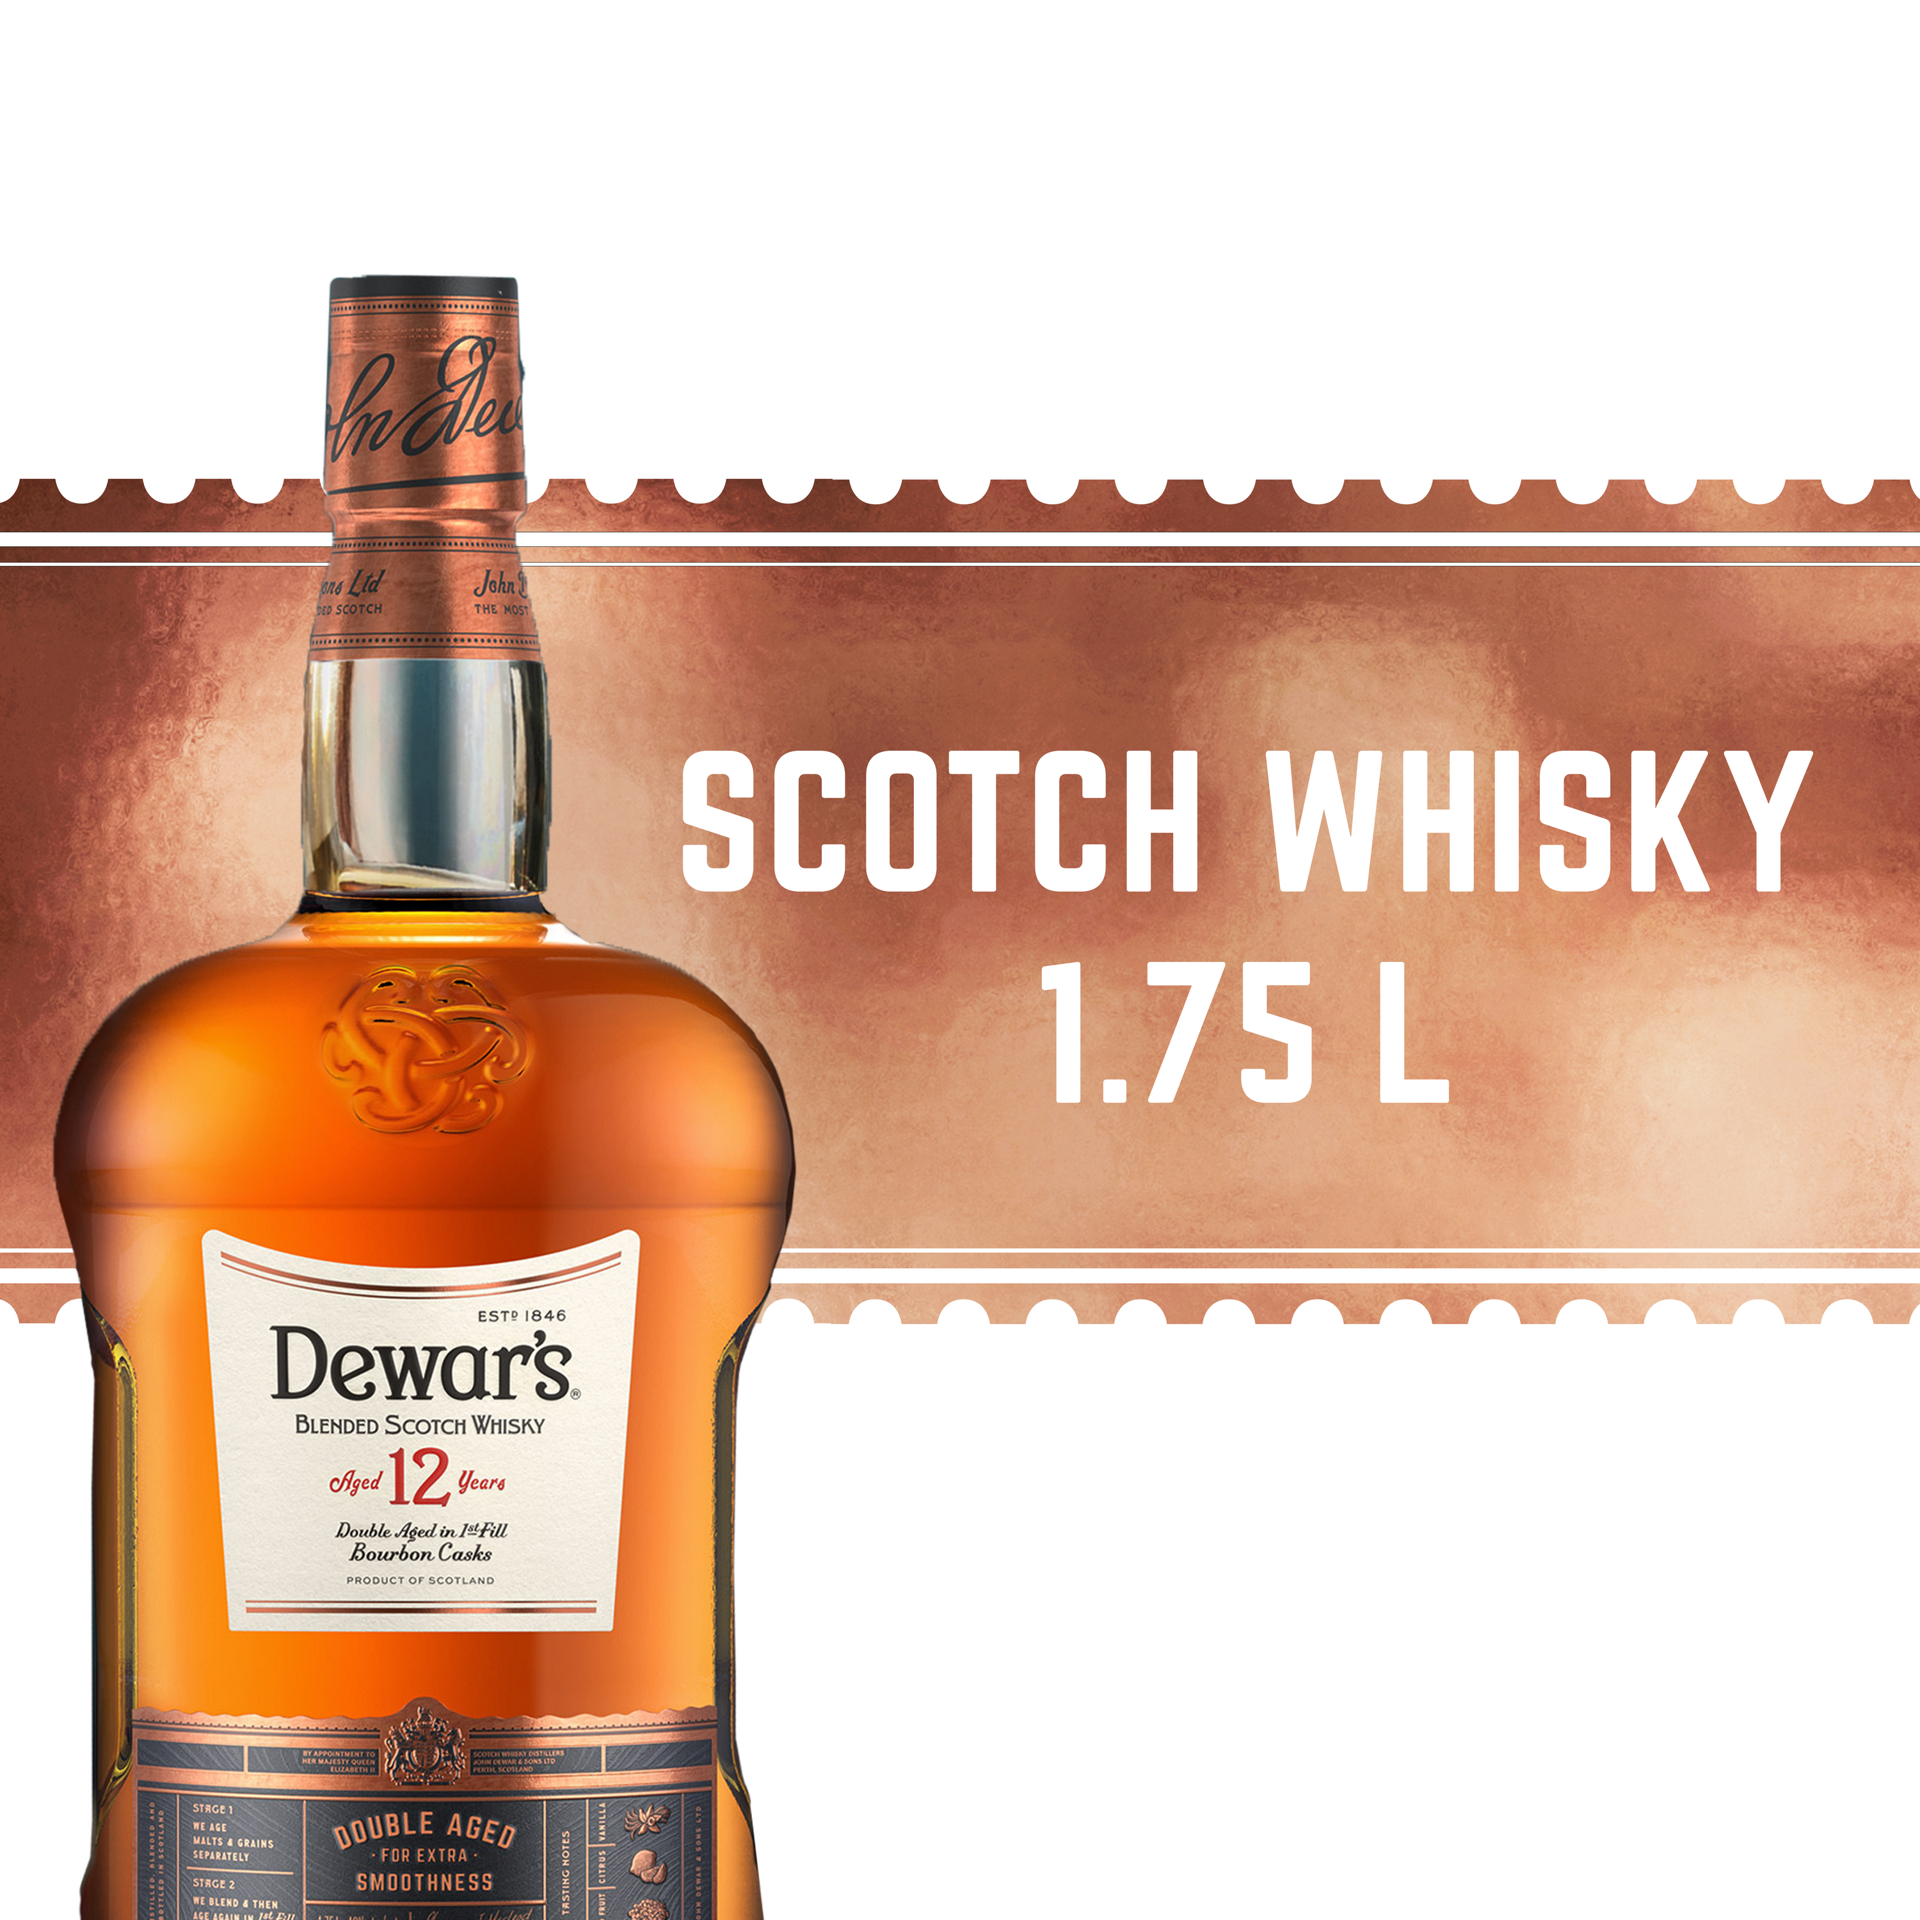 slide 3 of 5, Dewar's Dewars Scotch, 1.75 liter